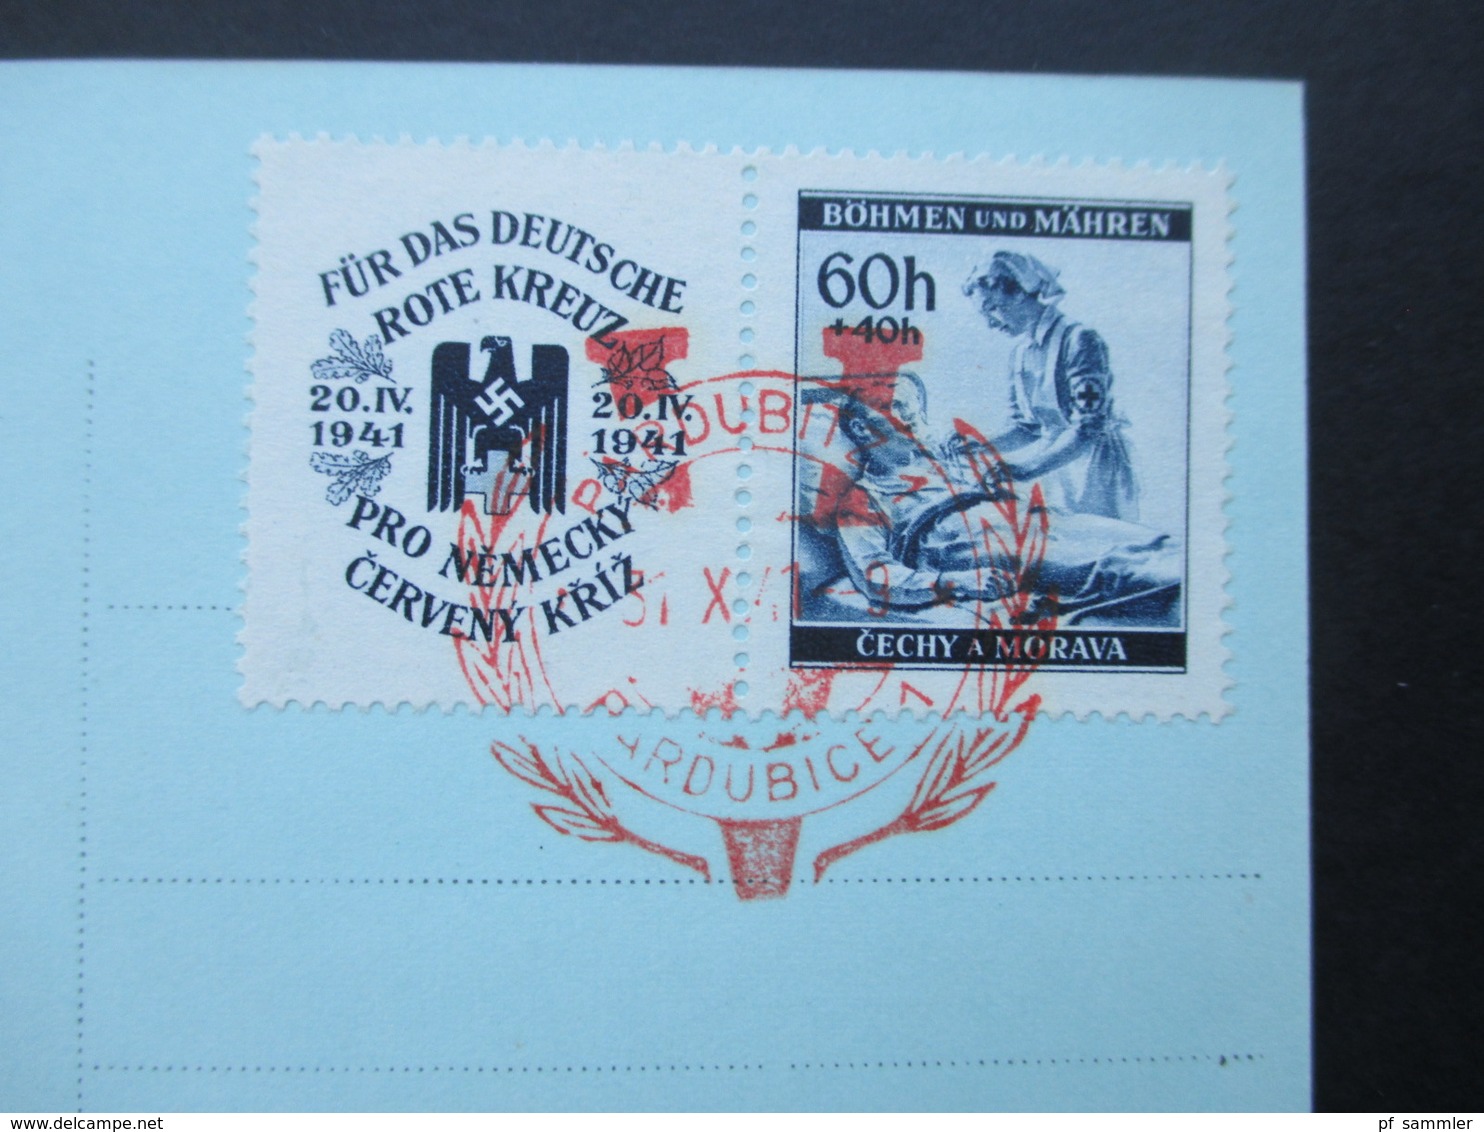 Böhmen Und Mähren 1941 Nr. 62 Zf Echtofoto Postkarte Pardubitz. Roter Sonderstempel 31.X..41 - Covers & Documents